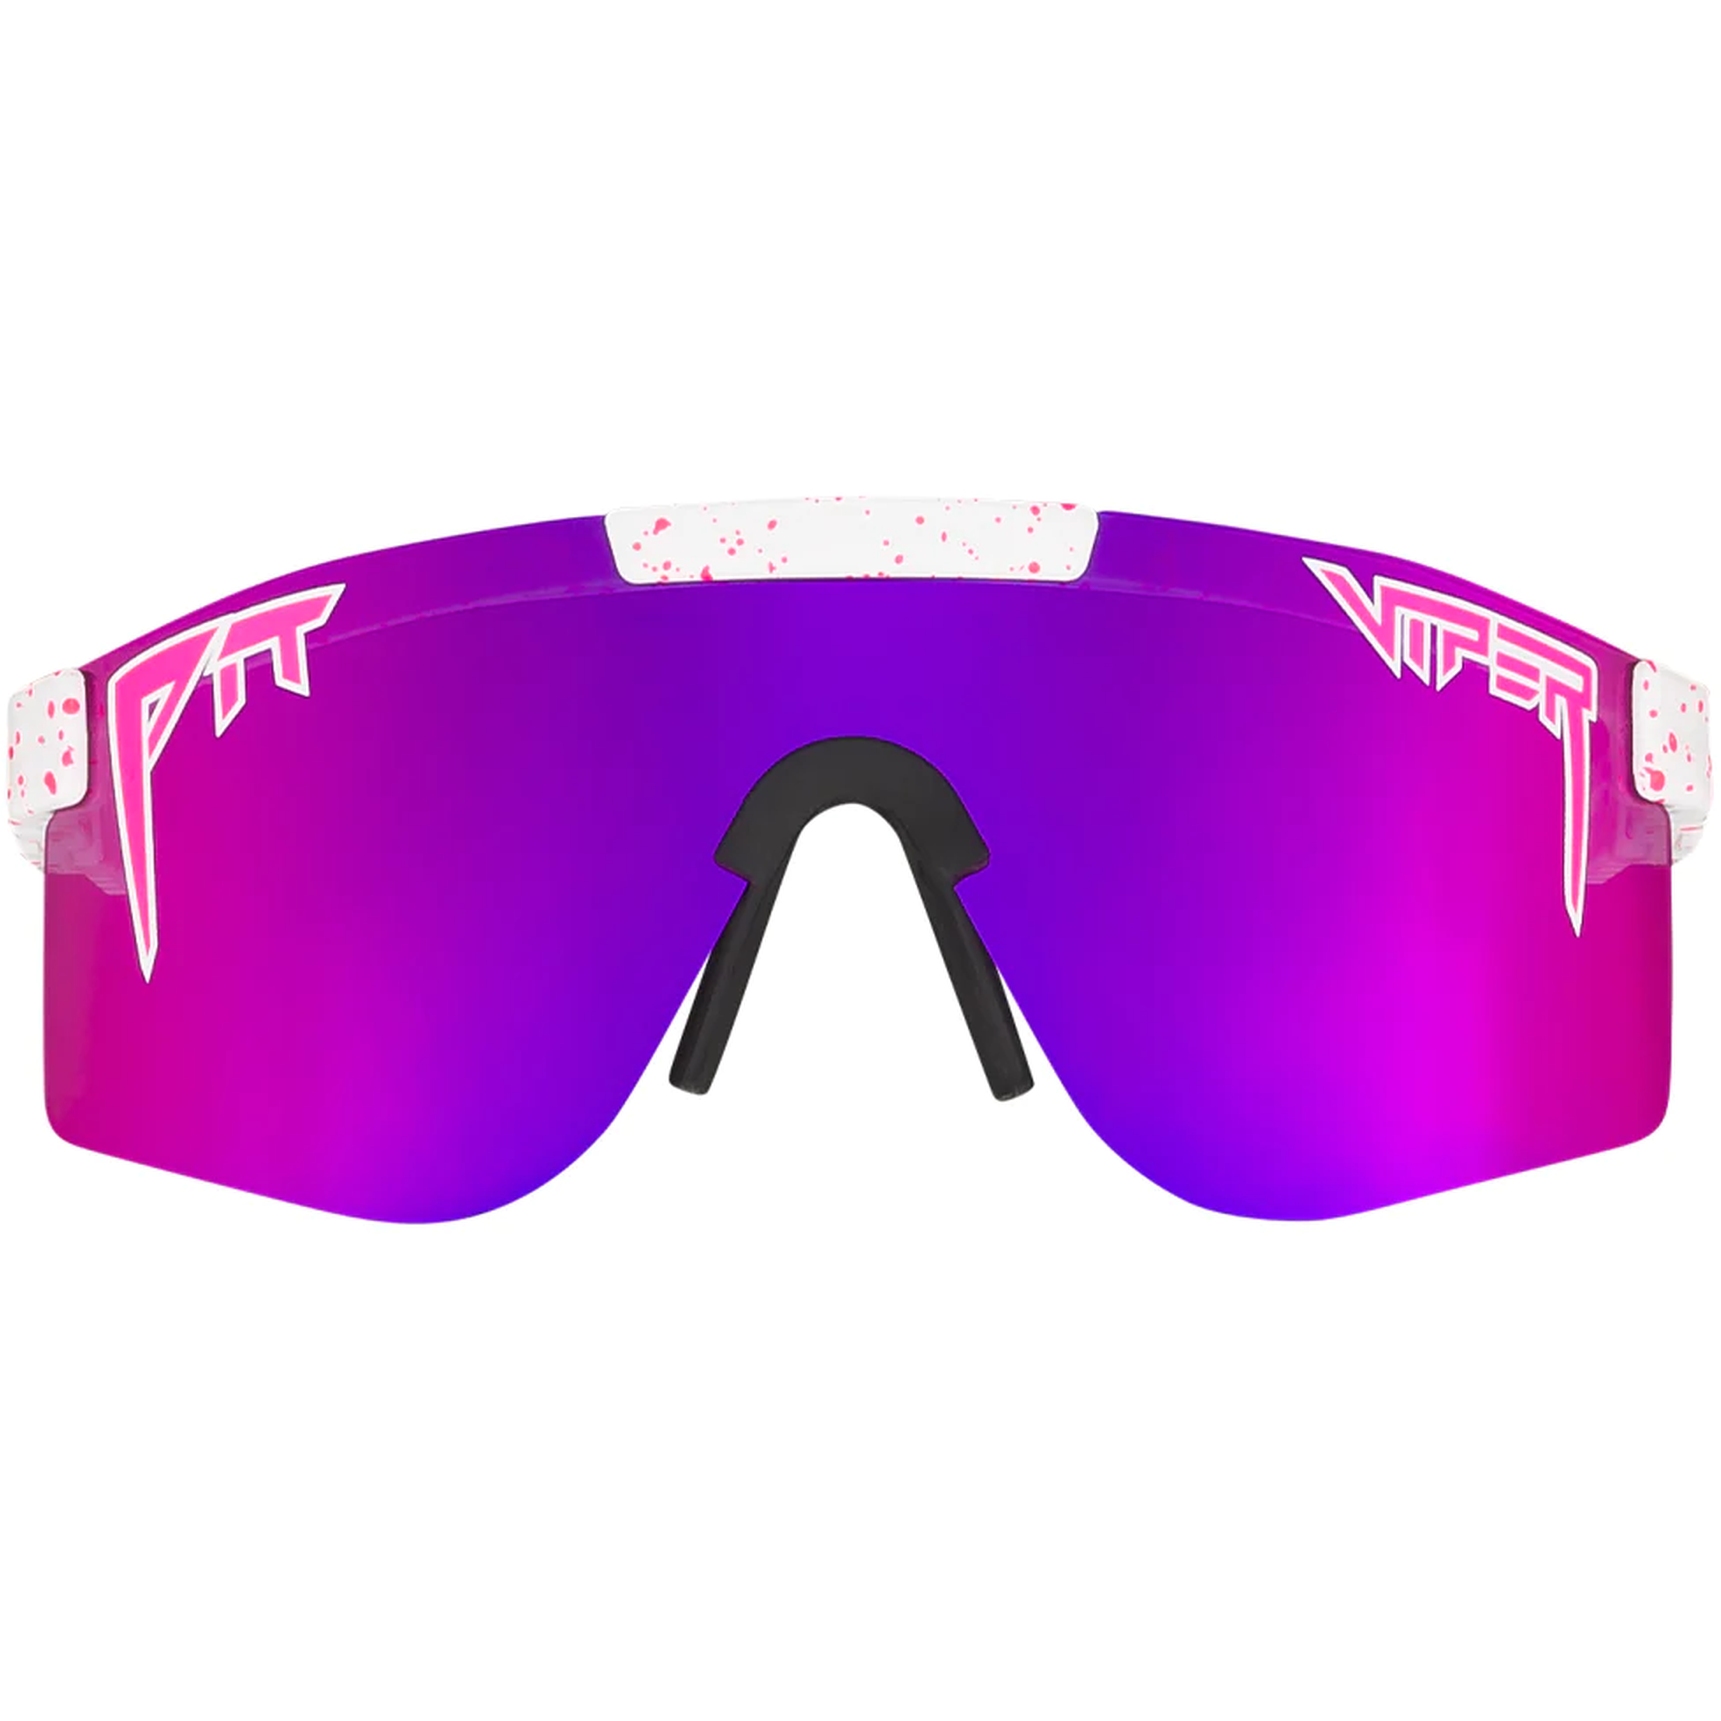 Produktbild von Pit Viper The Originals Brille - Double Wide - The LA Brights / Polarized Pink Revo Mirror